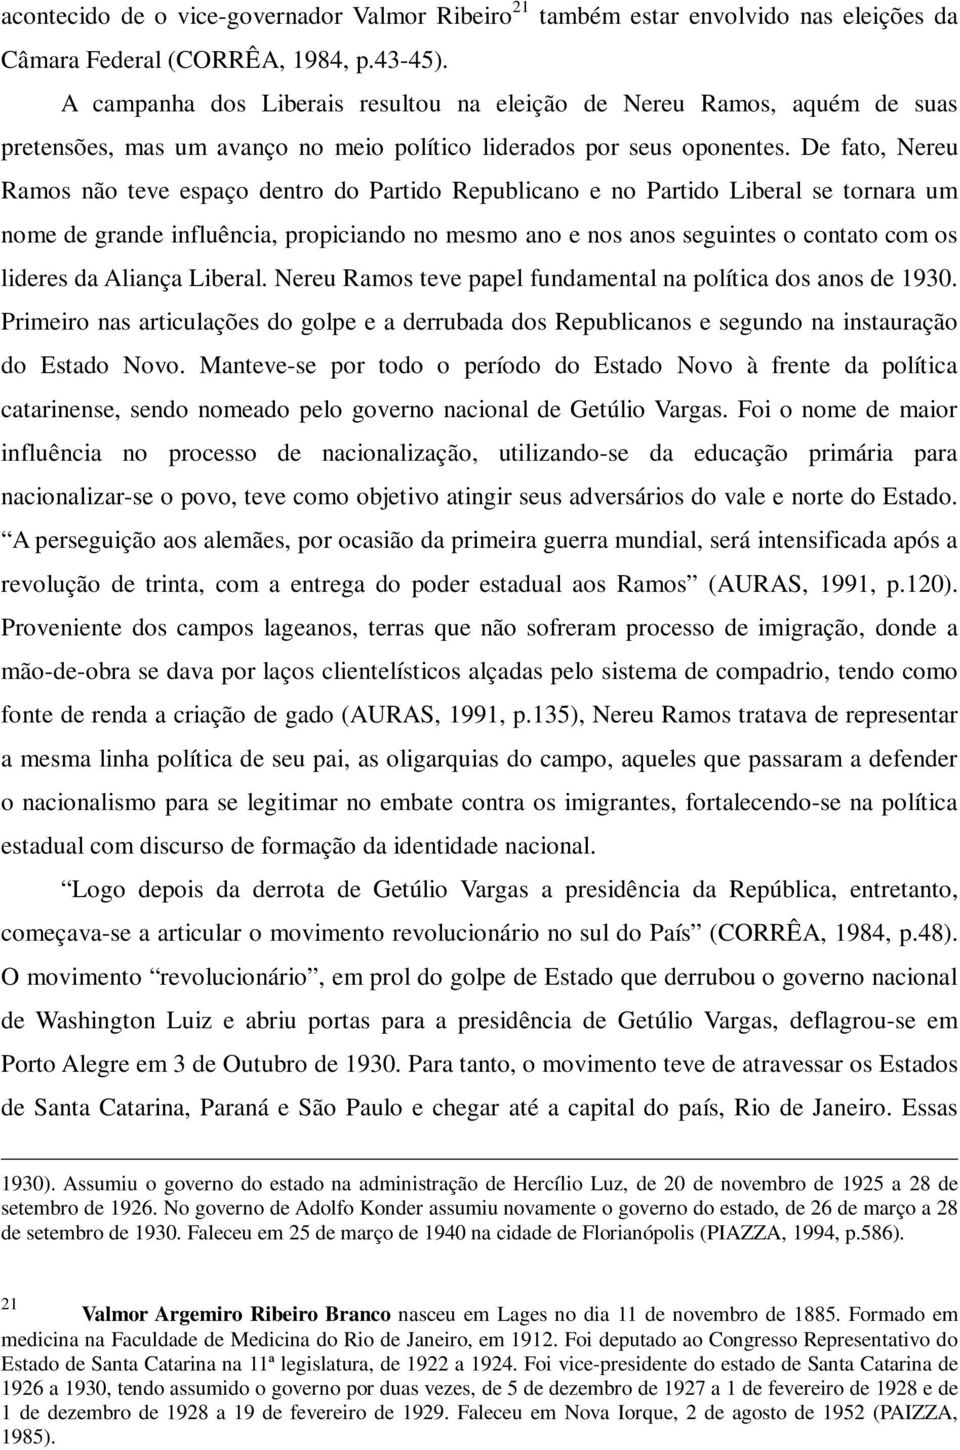 De fato, Nereu Ramos não teve espaço dentro do Partido Republicano e no Partido Liberal se tornara um nome de grande influência, propiciando no mesmo ano e nos anos seguintes o contato com os lideres